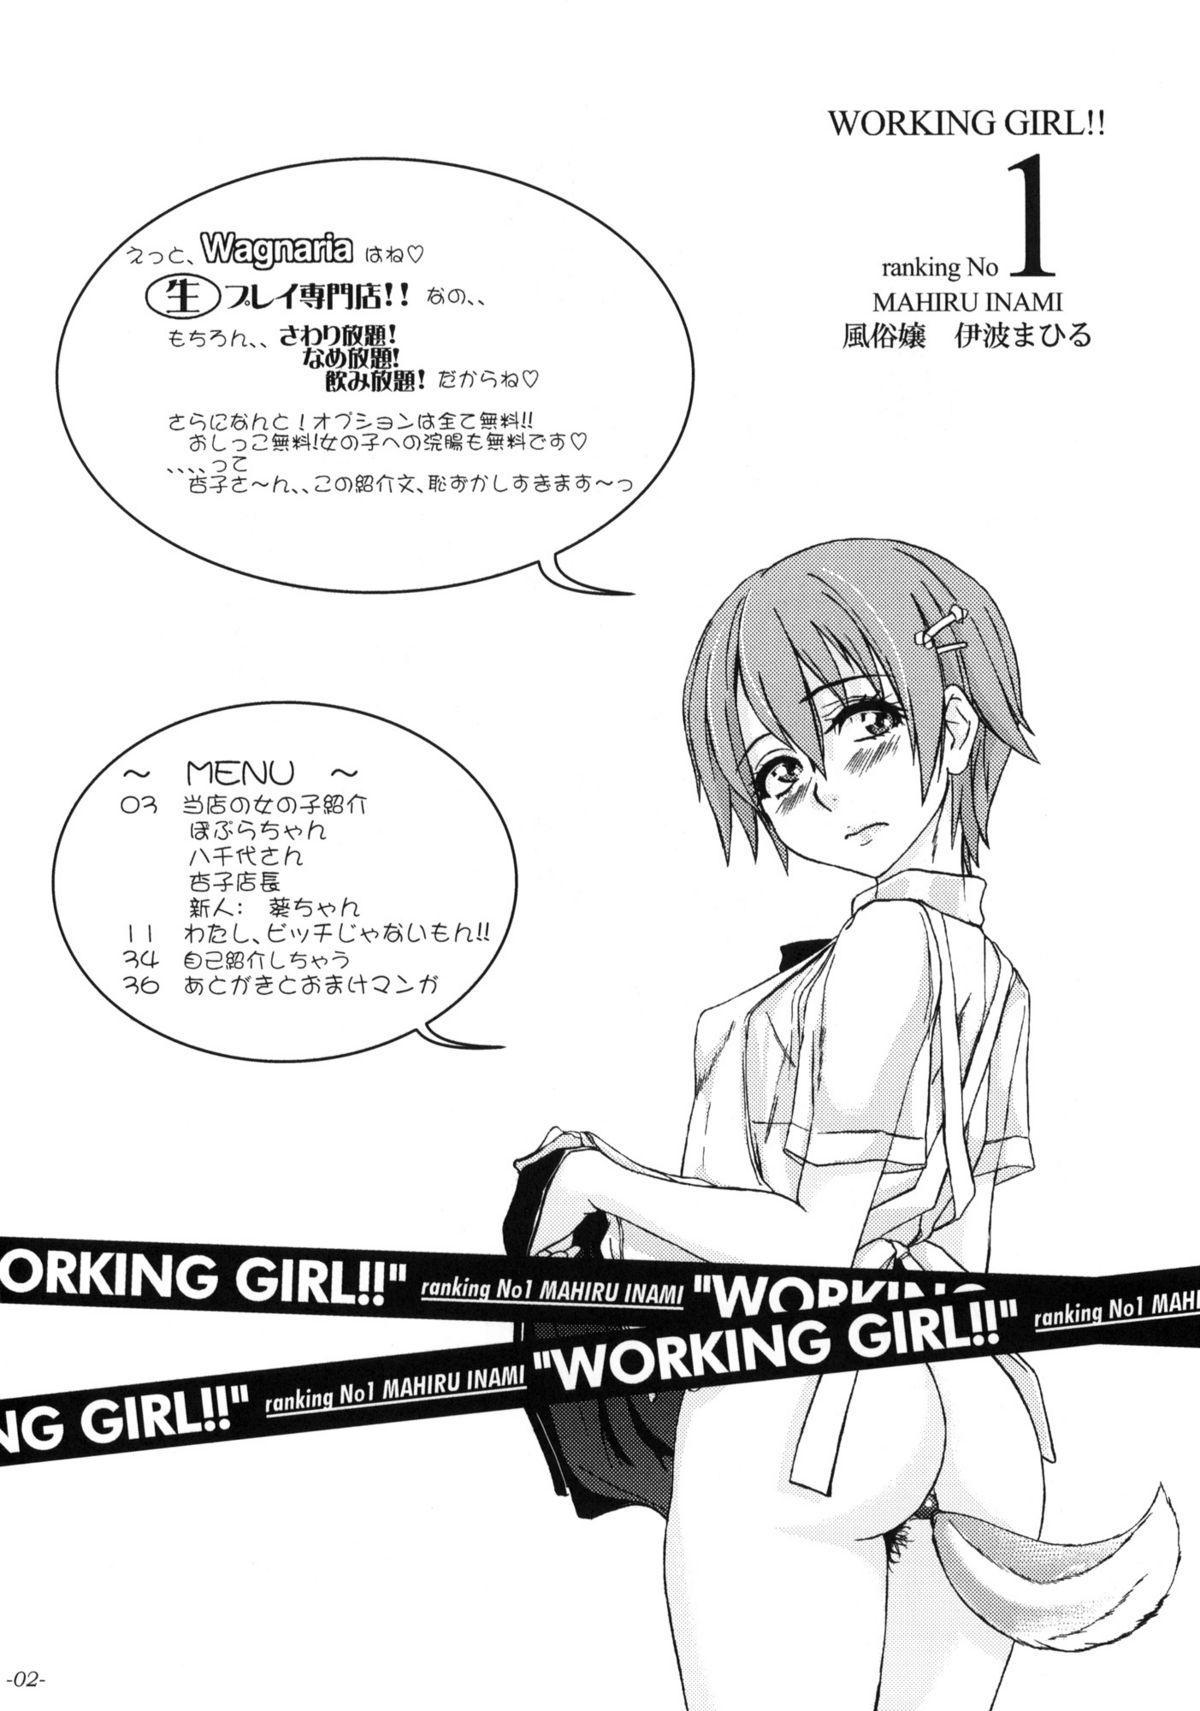 WORKING GIRL!! ranking No 1 Fuuzoku musume Inami Mahiru 2